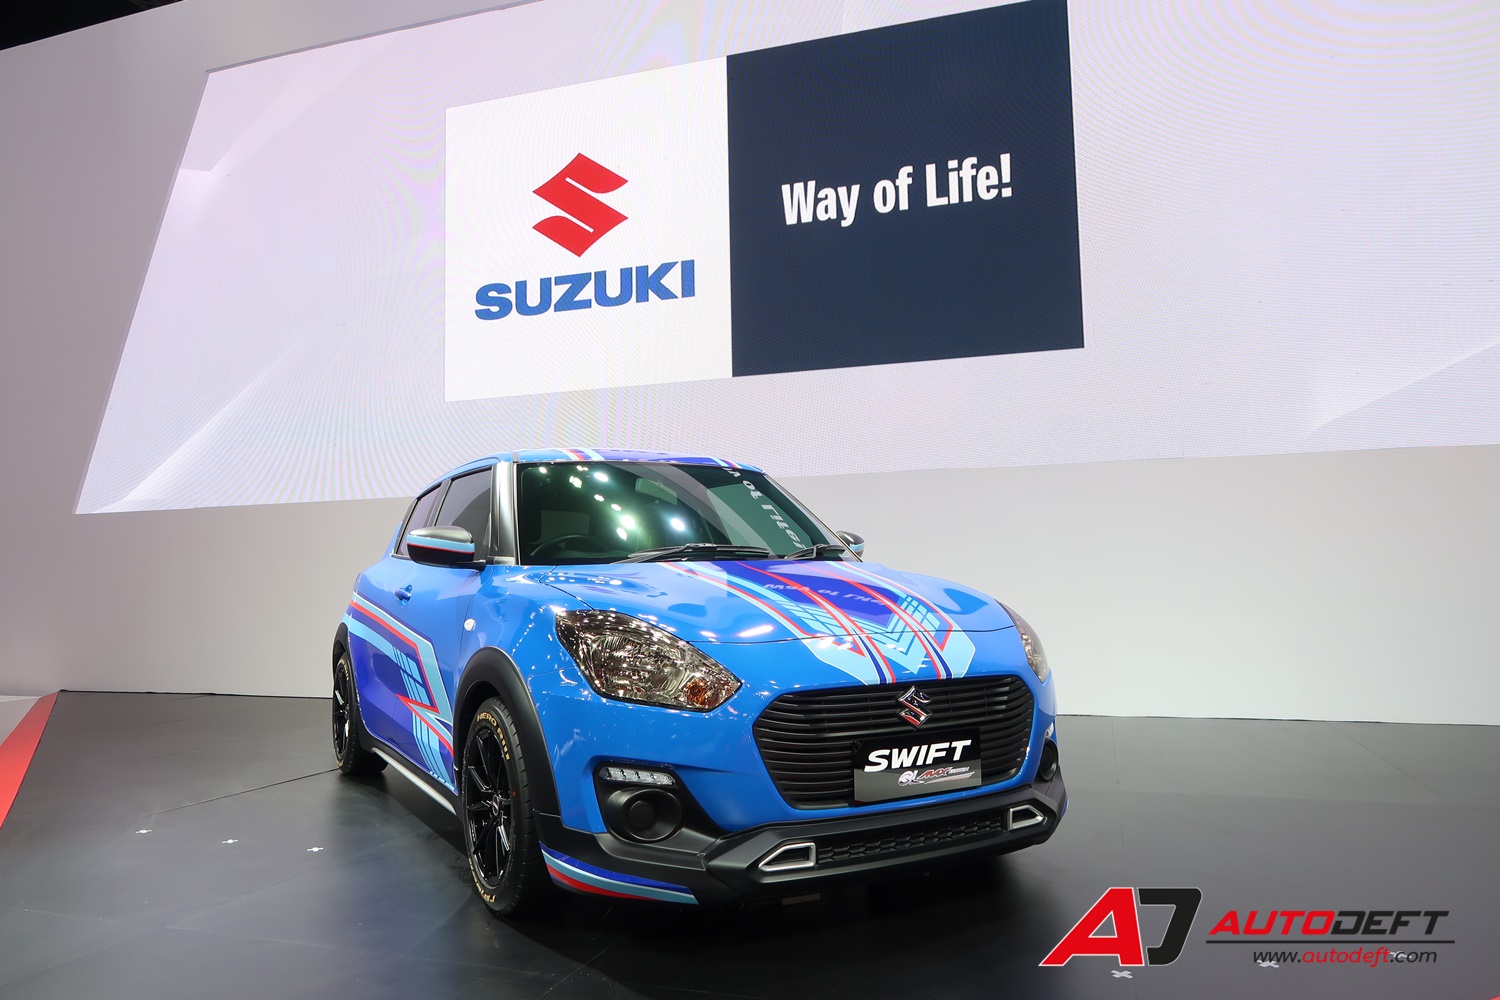 Suzuki at Motor Expo 2020